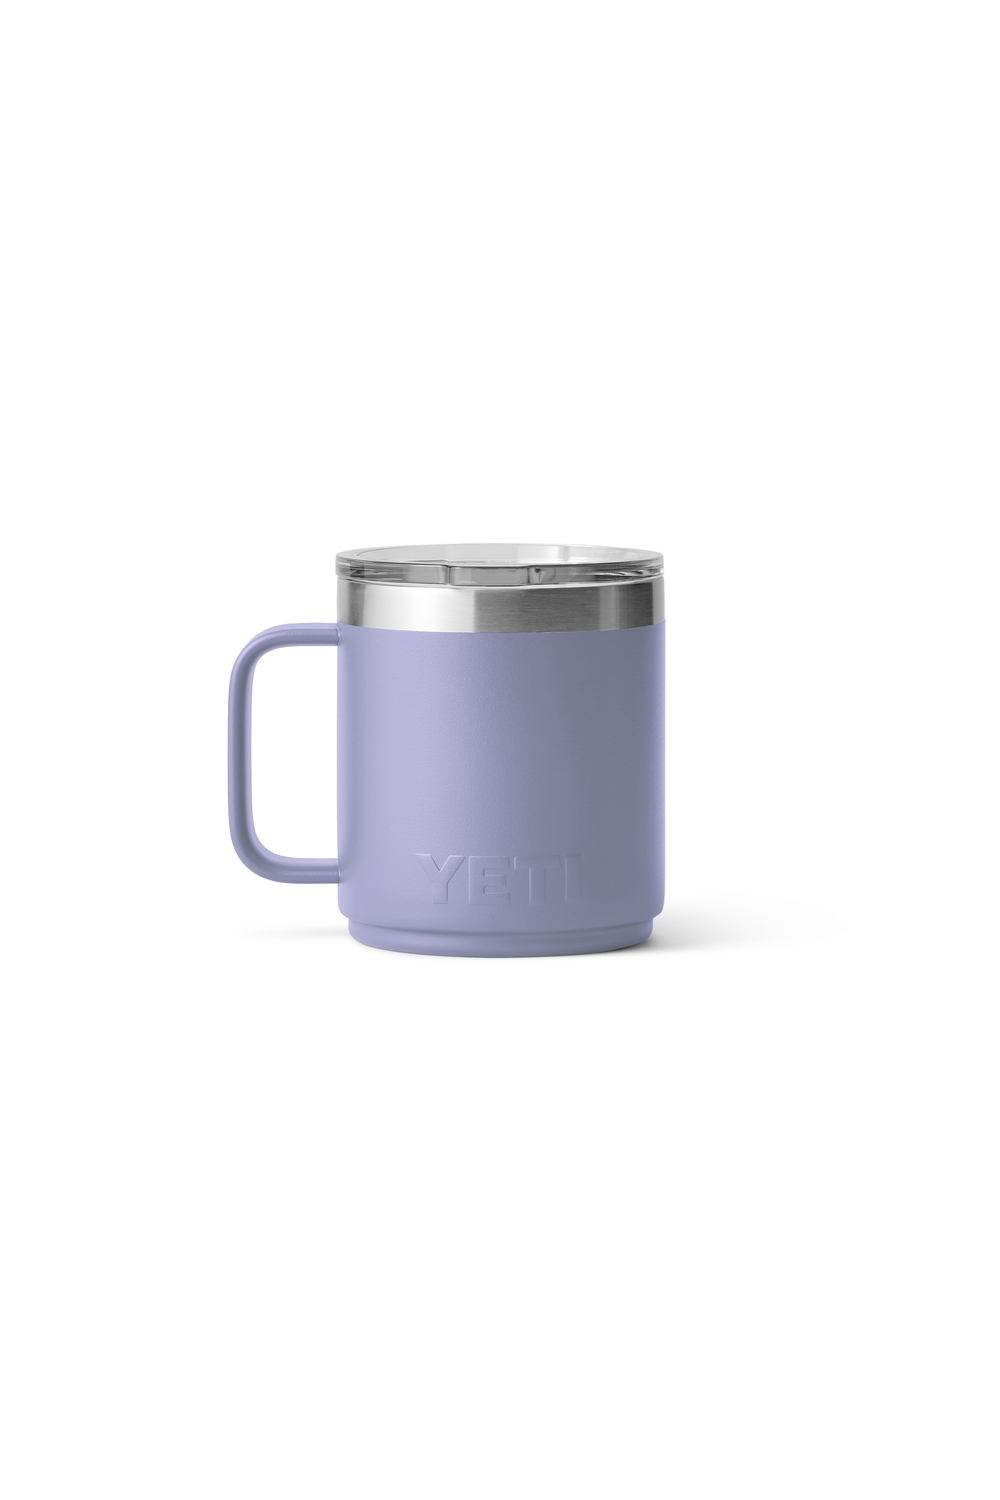 Yeti Rambler 10oz Mug MS Cosmic Lilac